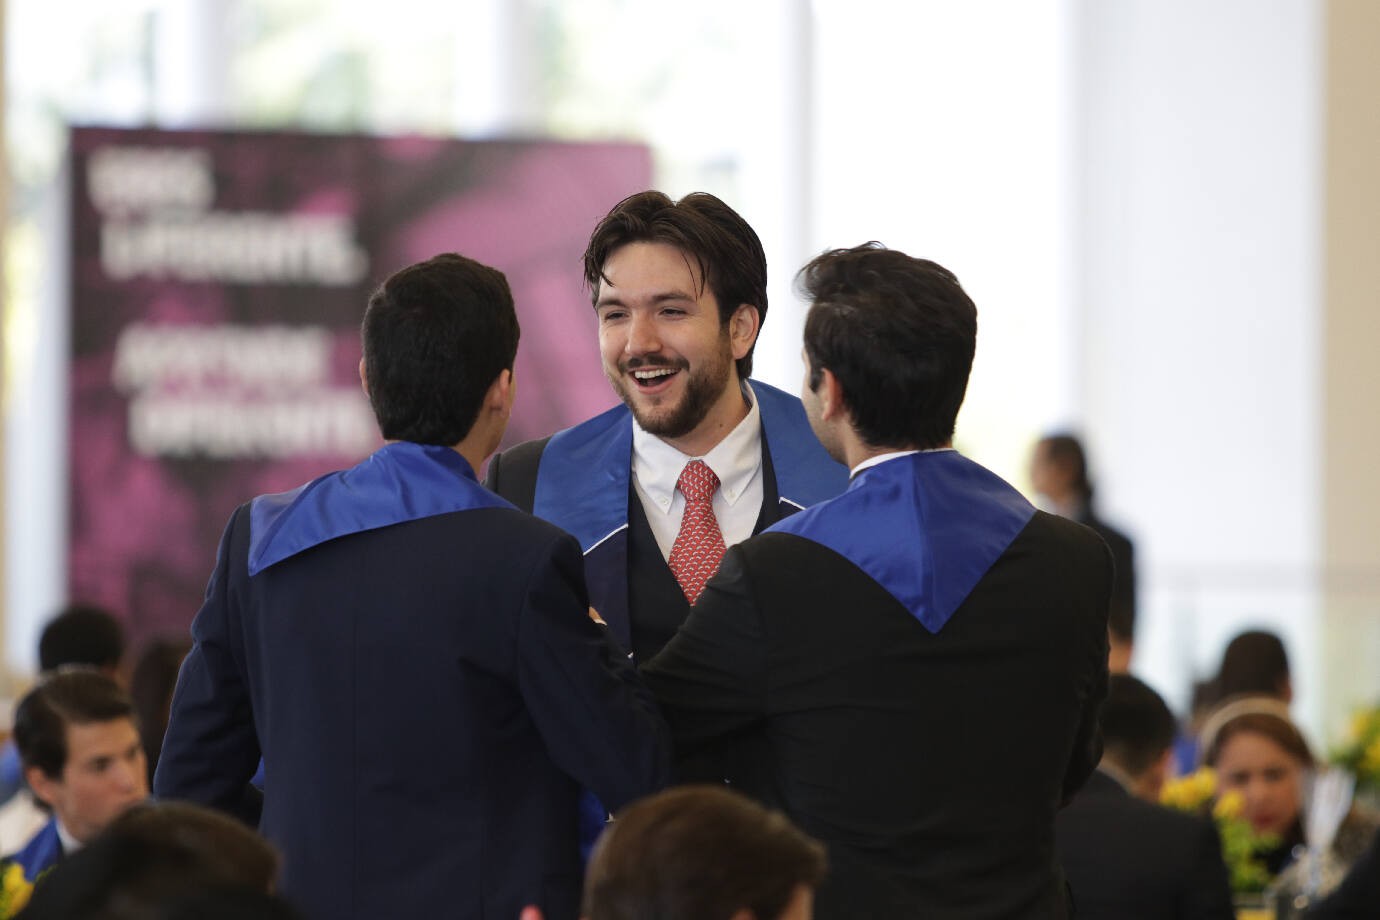 Desayuno previo a la graduación Diciembre 2019 en el Tec Guadalajara